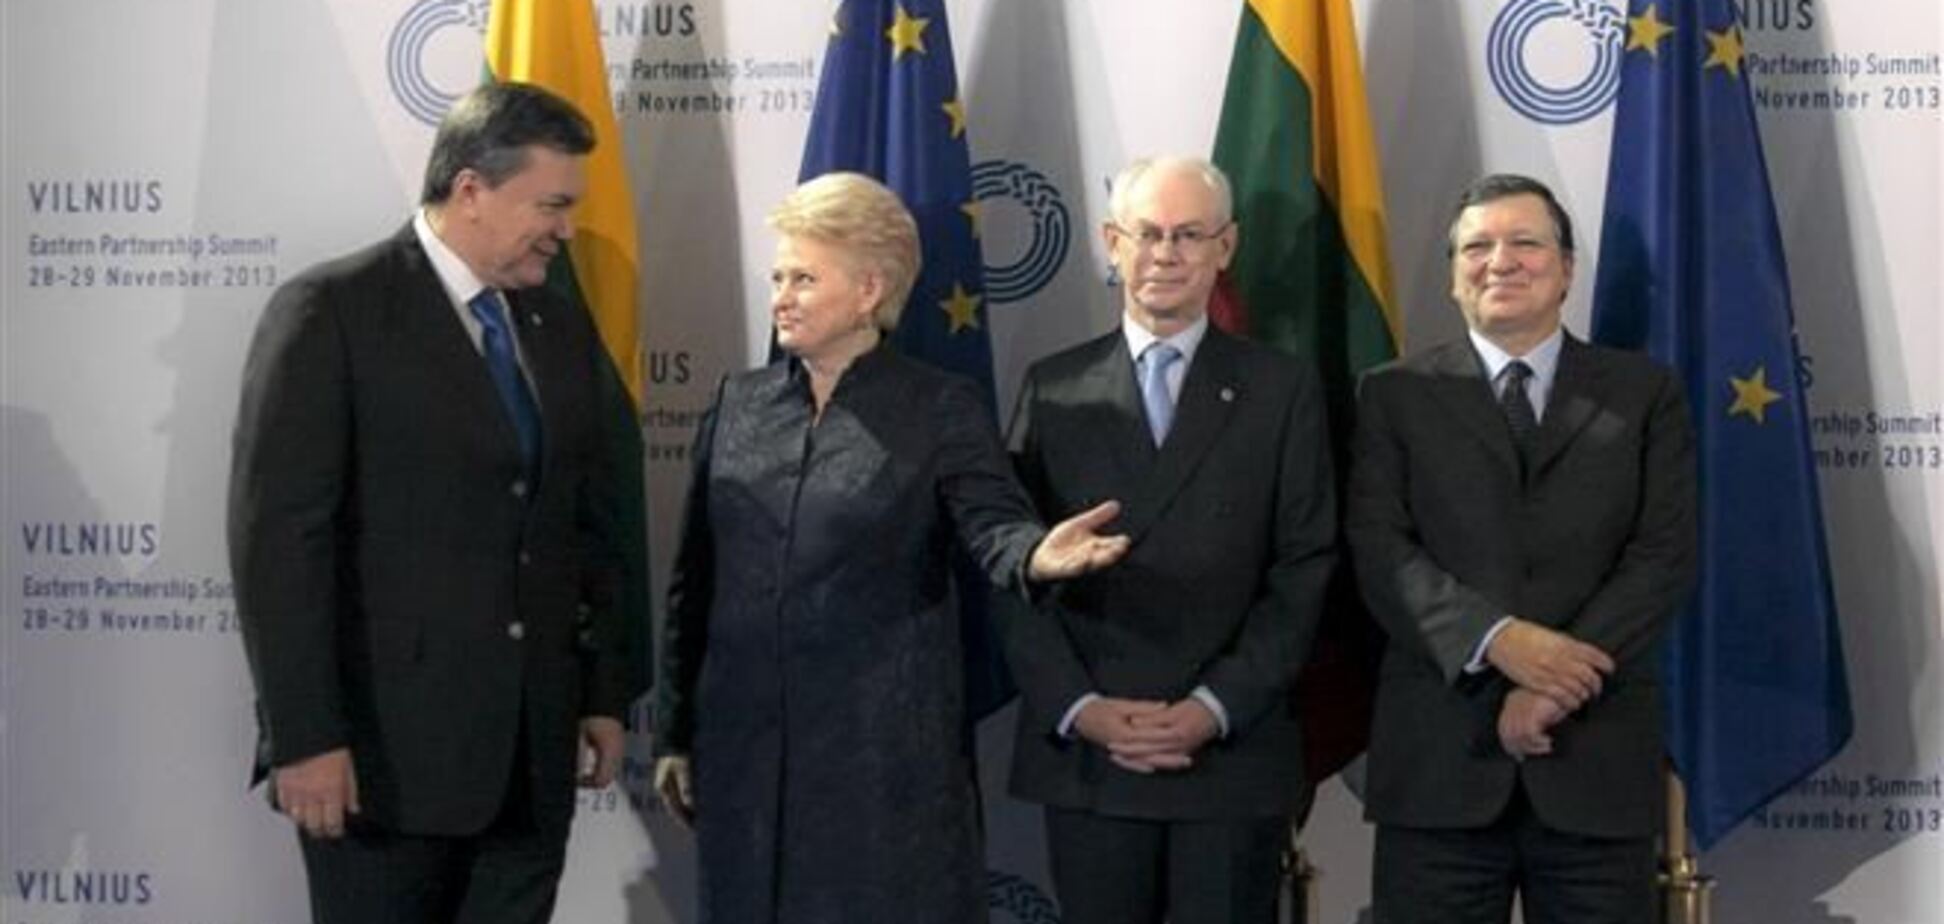 ЗМІ дізналися, про що говорили європейські лідери на закритій частині Вільнюського саміту